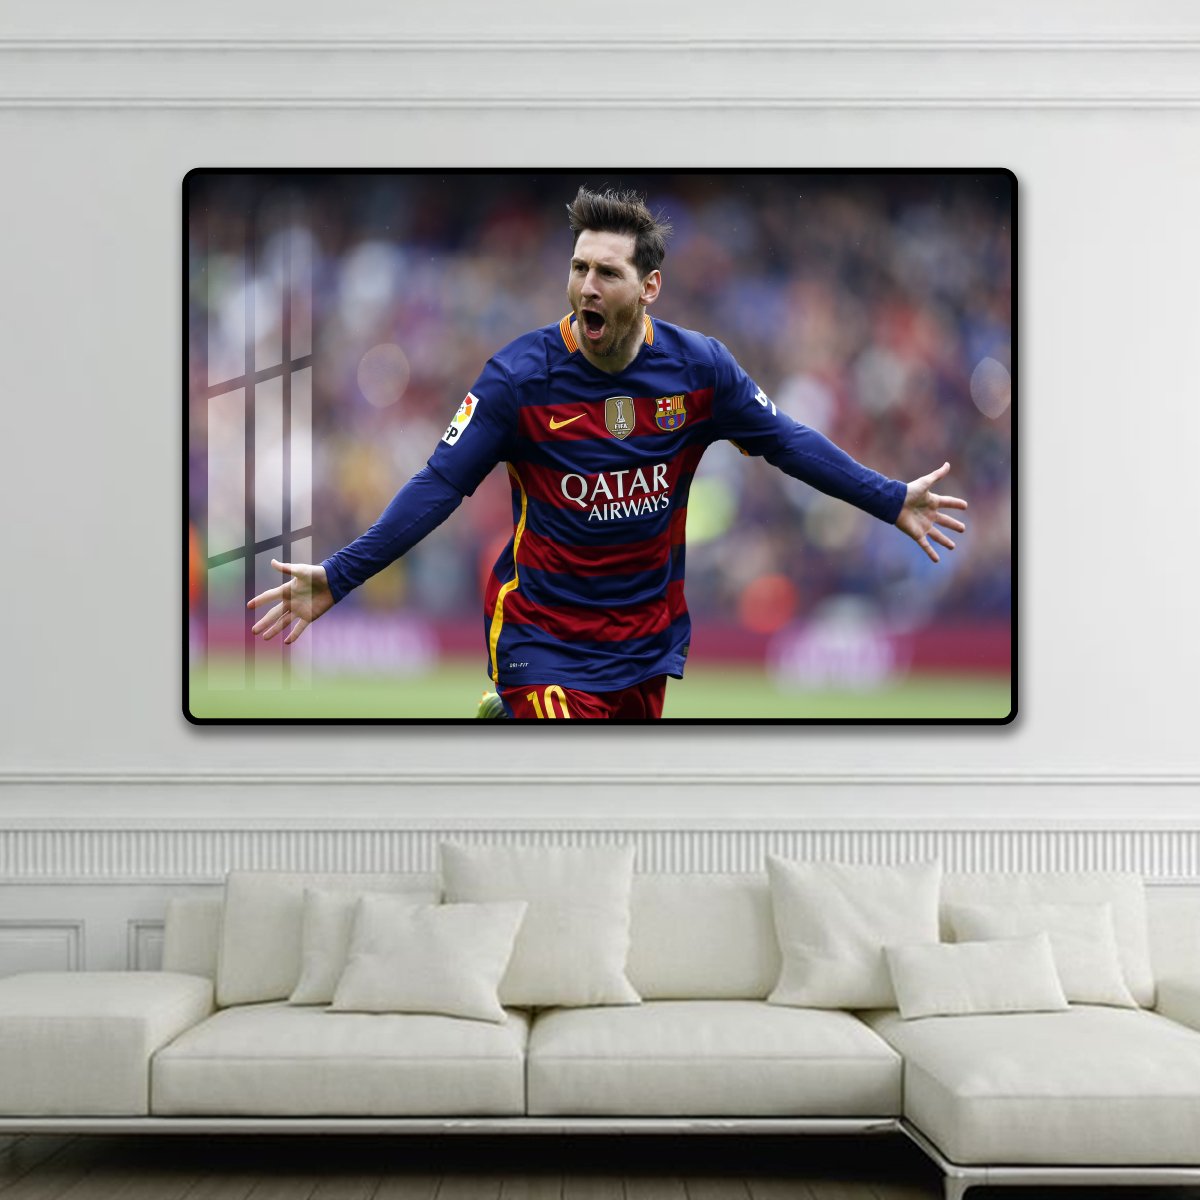 Tranh treo tường cầu thủ Messi 2